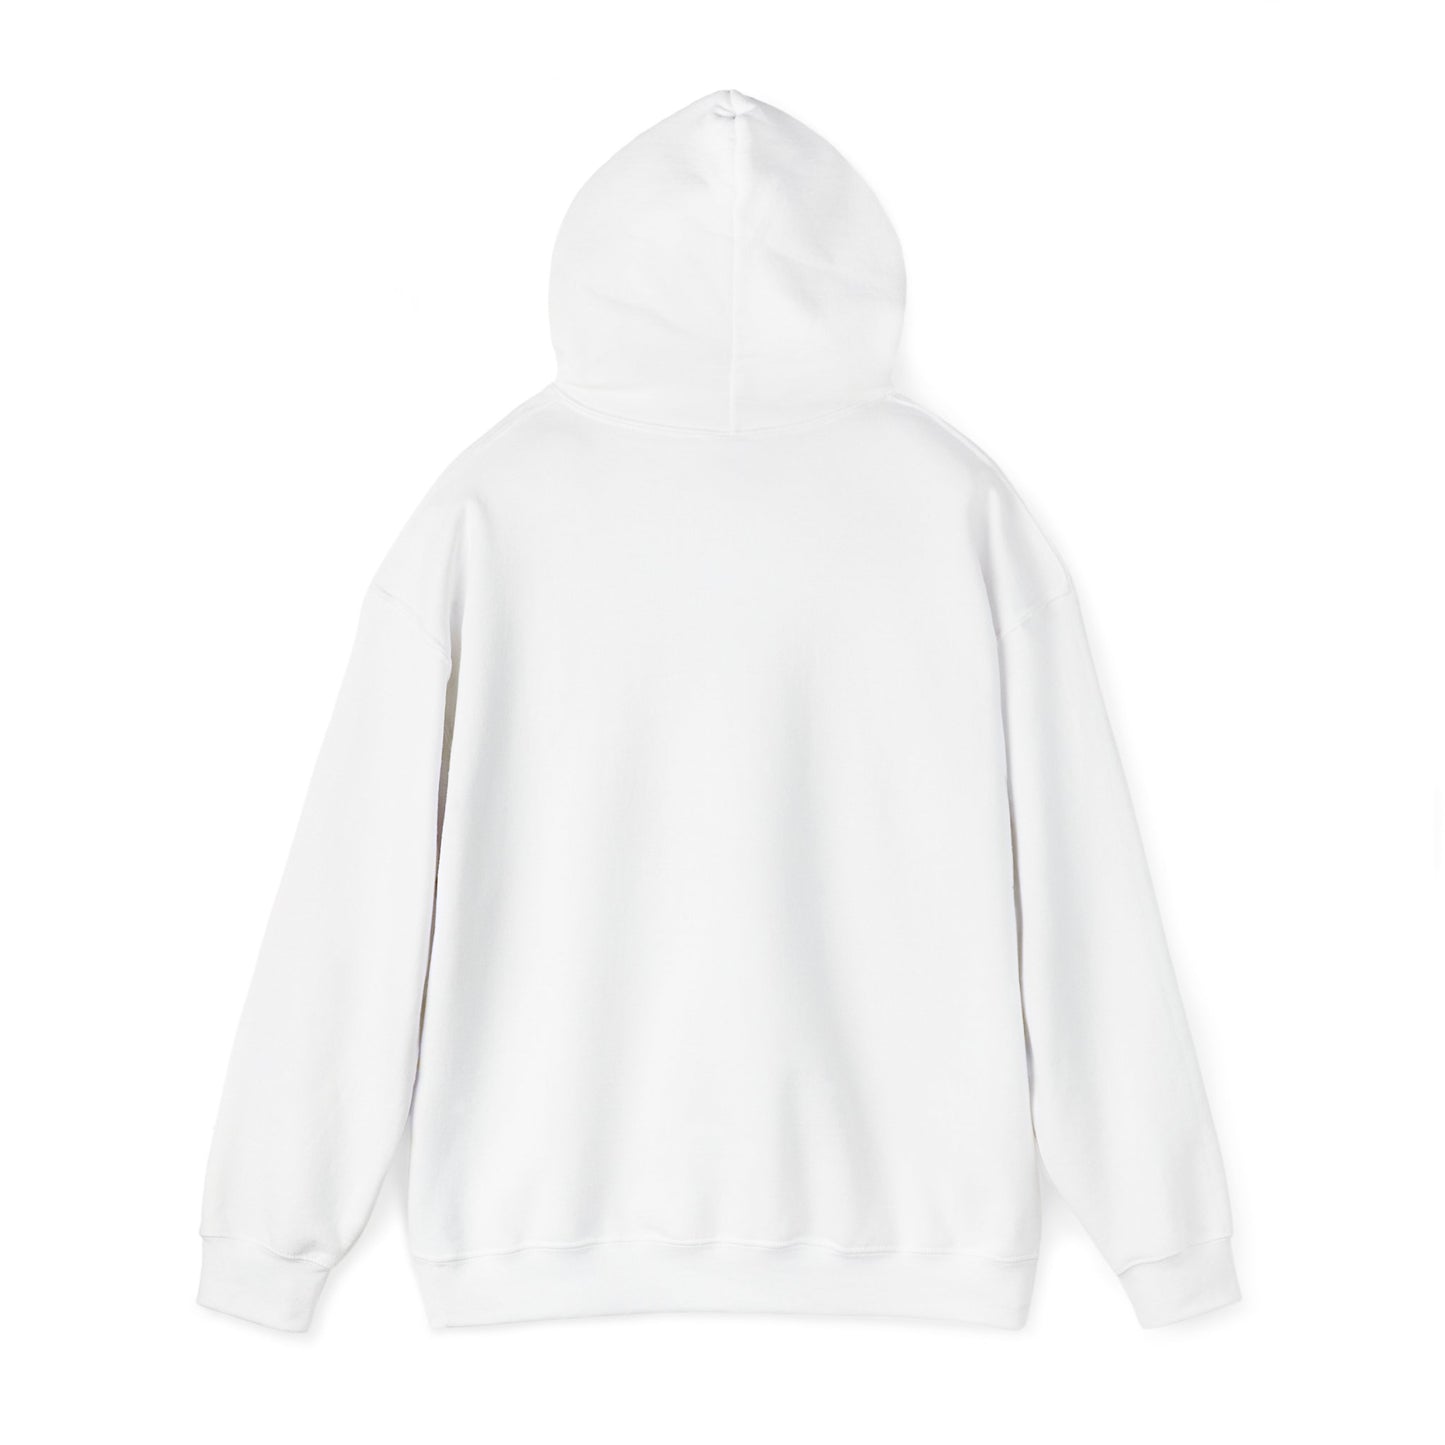 "Return to Pemberley" Unisex Heavy Blend™ Hooded Sweatshirt